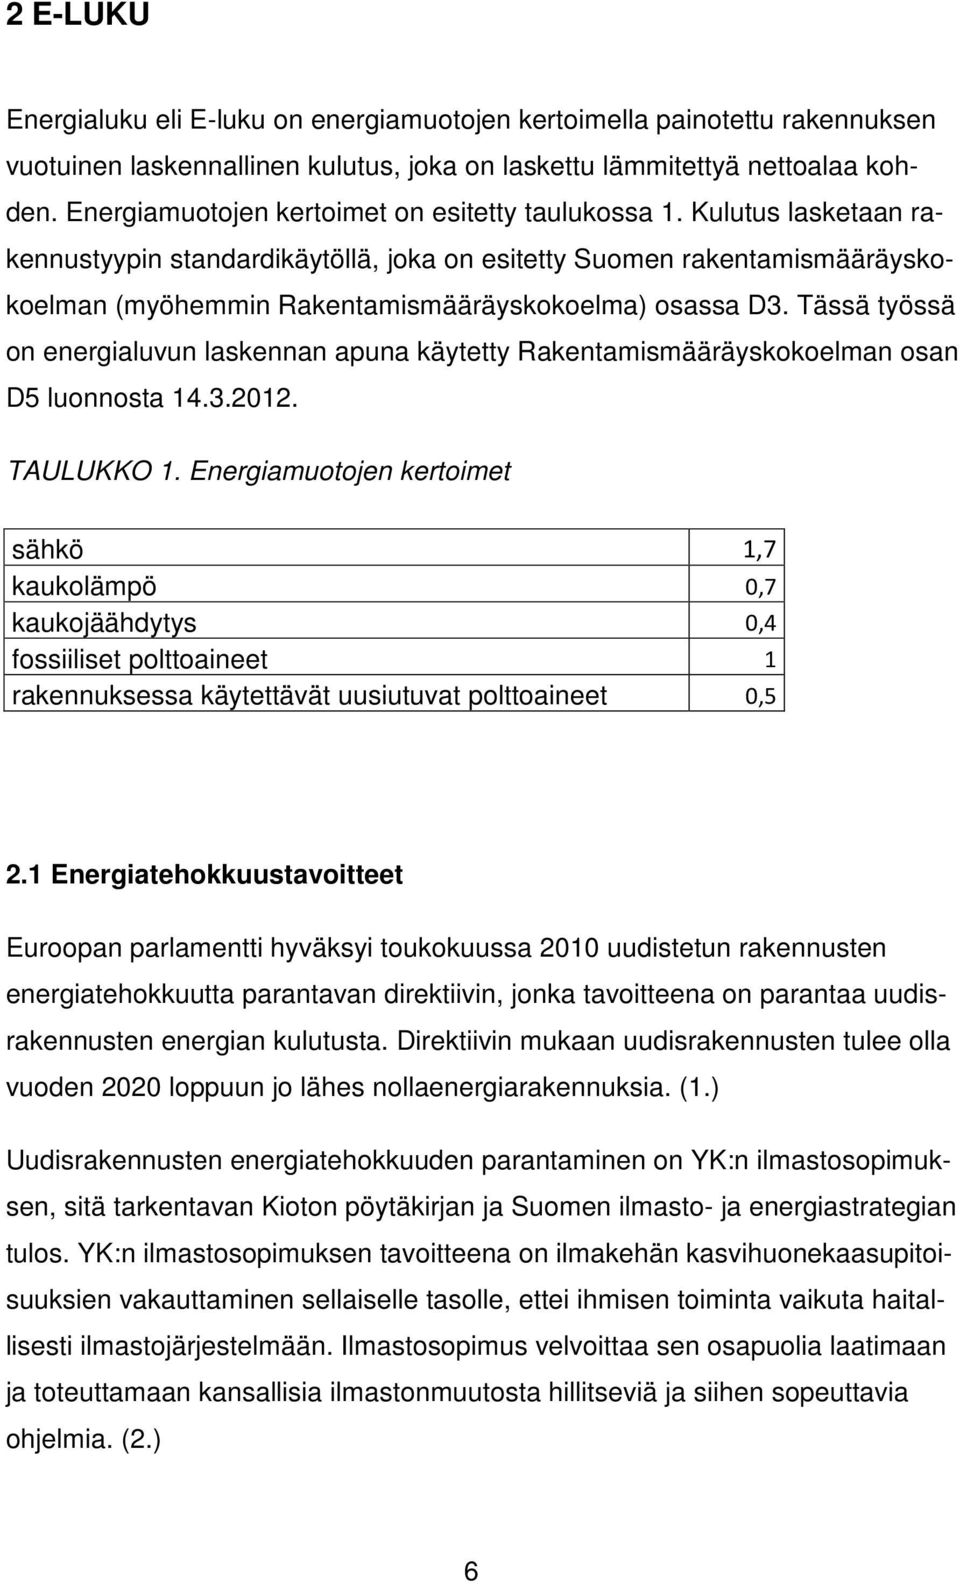 Kulutus lasketaan rakennustyypin standardikäytöllä, joka on esitetty Suomen rakentamismääräyskokoelman (myöhemmin Rakentamismääräyskokoelma) osassa D3.